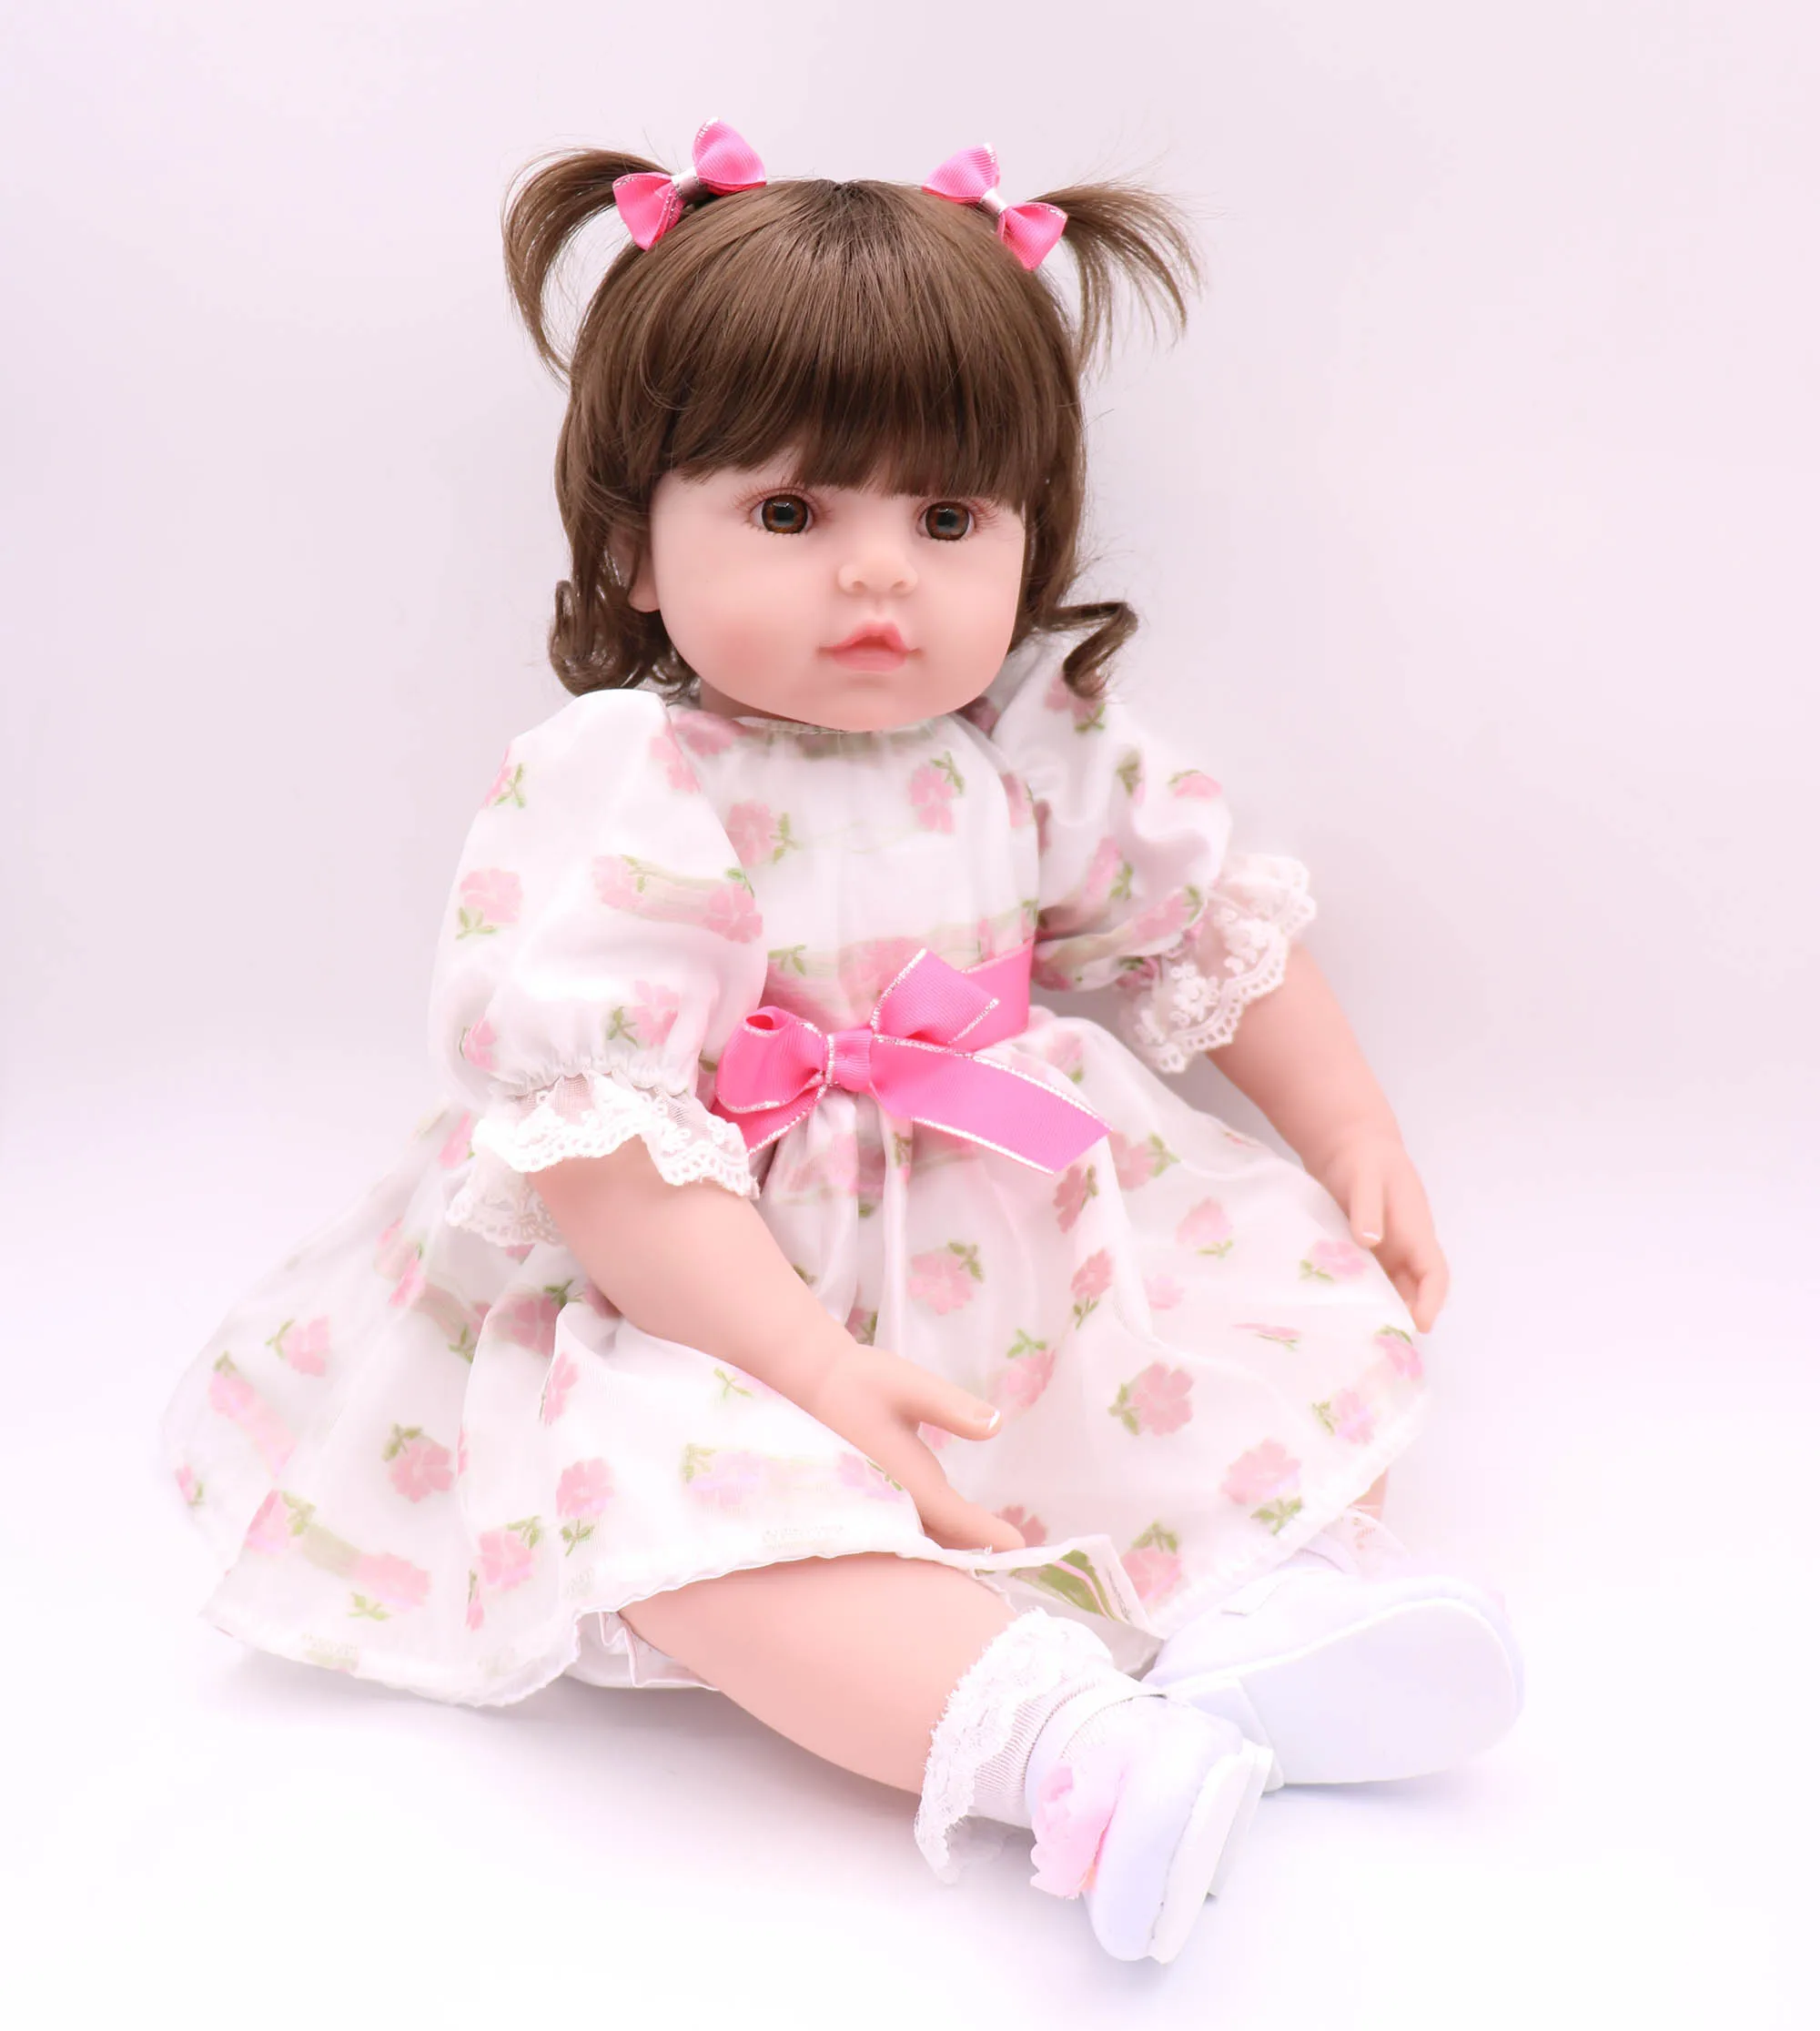 

22 дюймов Реалистичная девочка кукла реборн длинные волосы принцесса девочка кукла с модным одеванием малыш куклы дети подарок на день рожд...